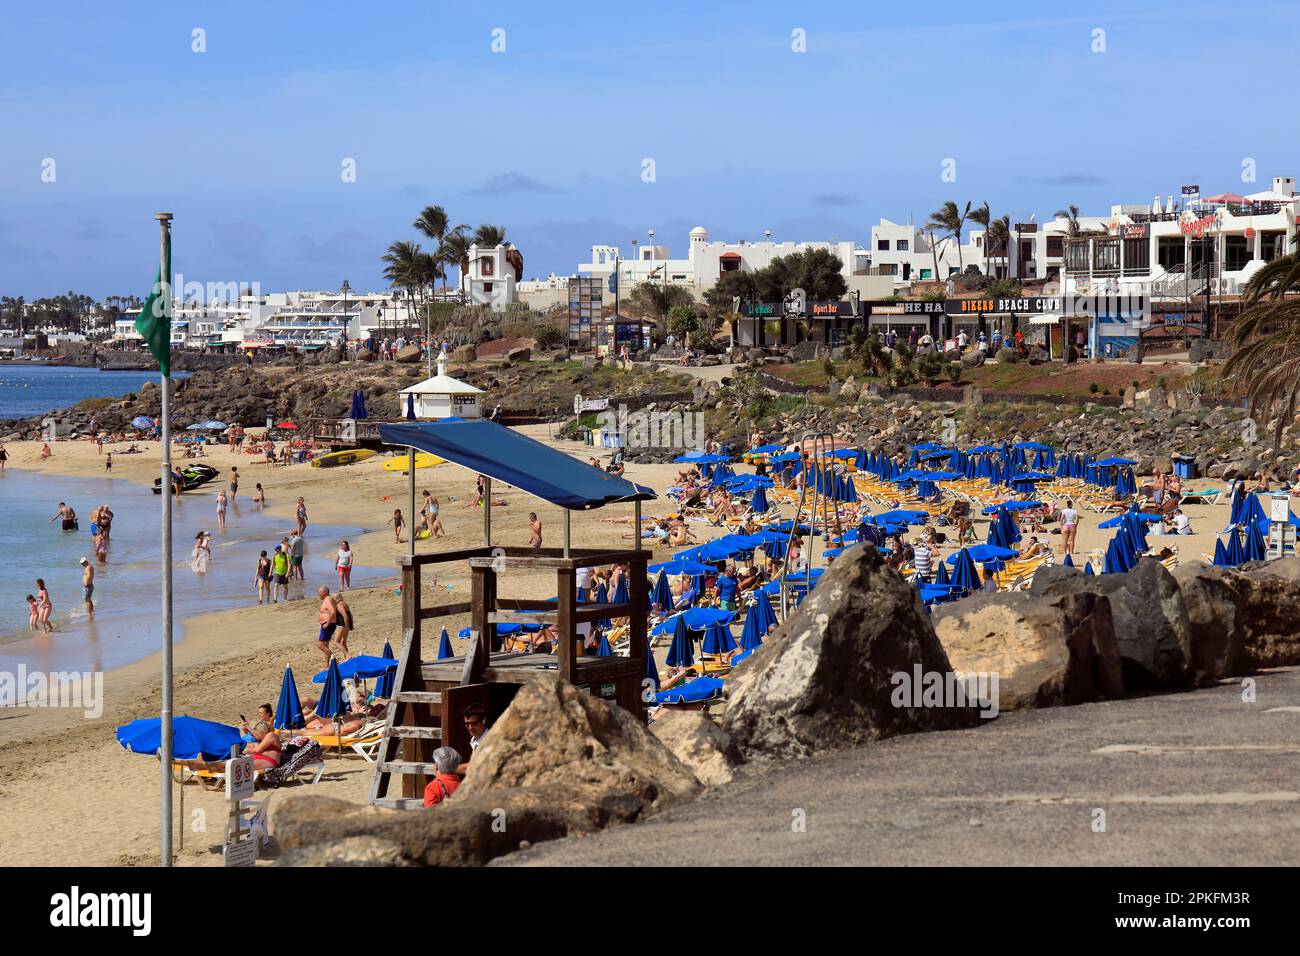 Weg an einer geschäftigen Strandszene, Playa Blanca, Lanzarote mit hölzerner Plattform Rettungsschwimmerstation. Februar/März 2023. Stockfoto